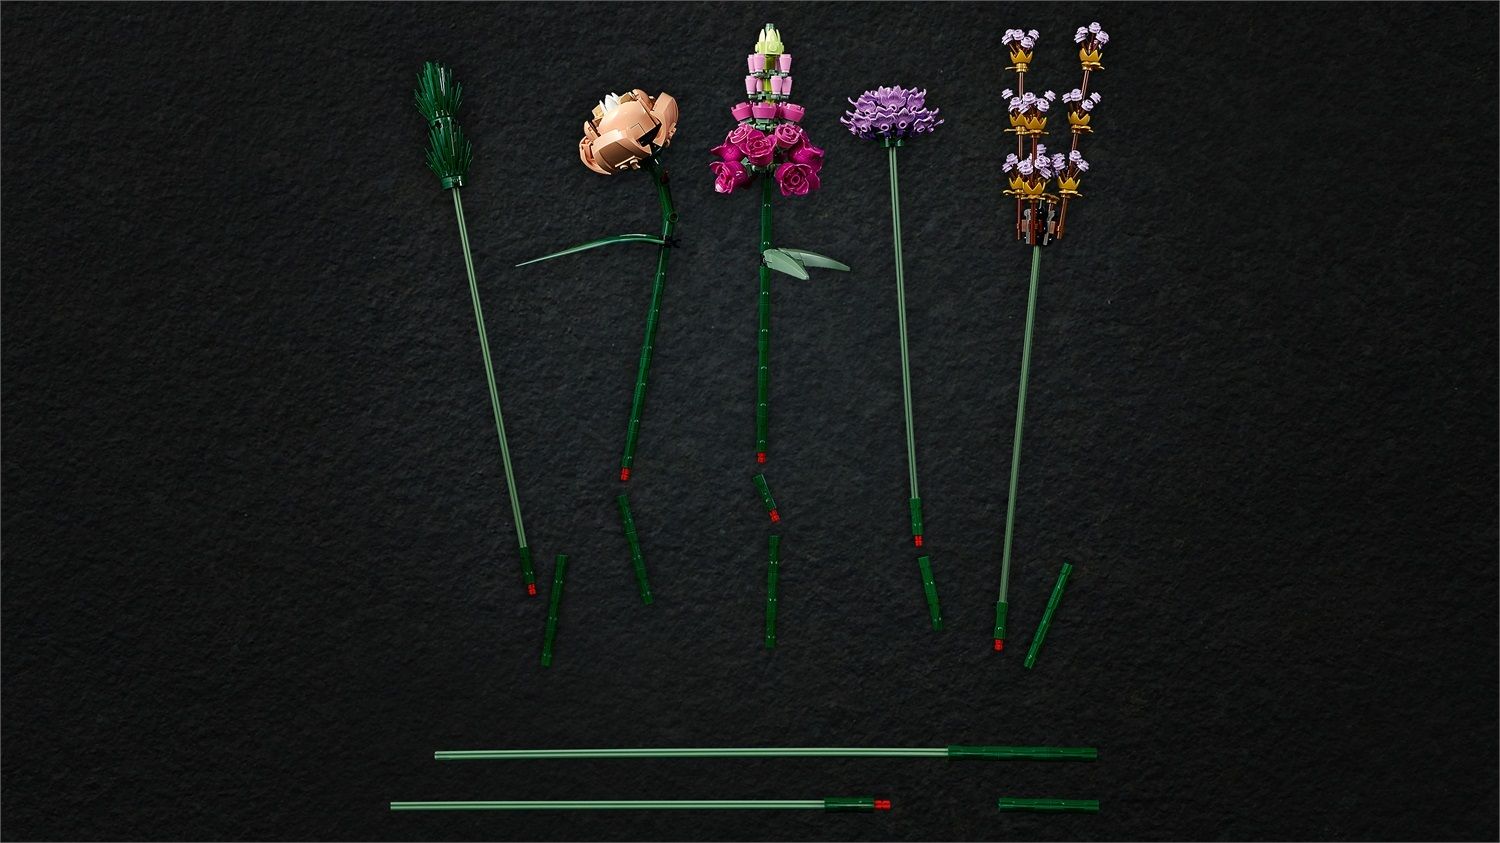 LEGO Icons 10280 Bouquet di Fiori, Piante Artificiali, Botanical Collection  in Vendita Online